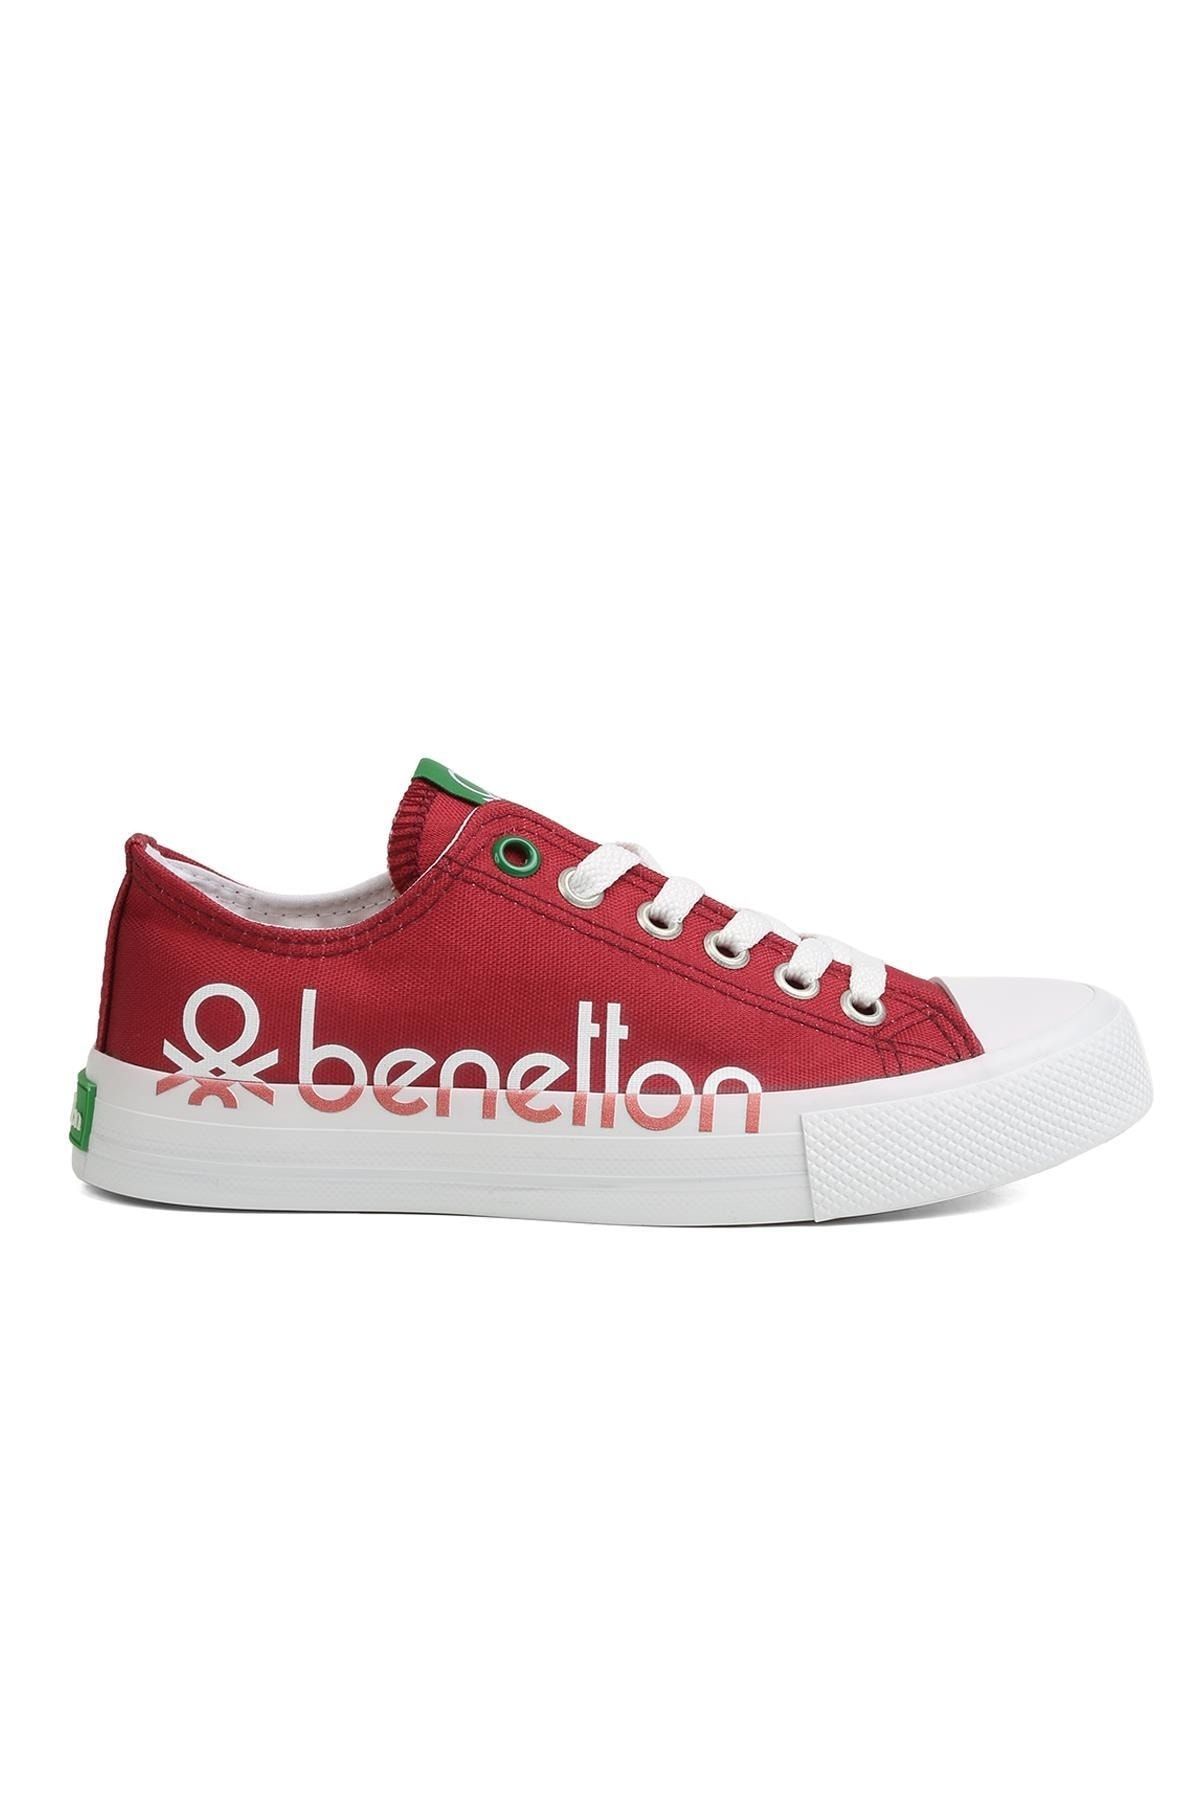 Benetton ® | Bn-30566 - 3374 Bordo - Kadın Spor Ayakkabı